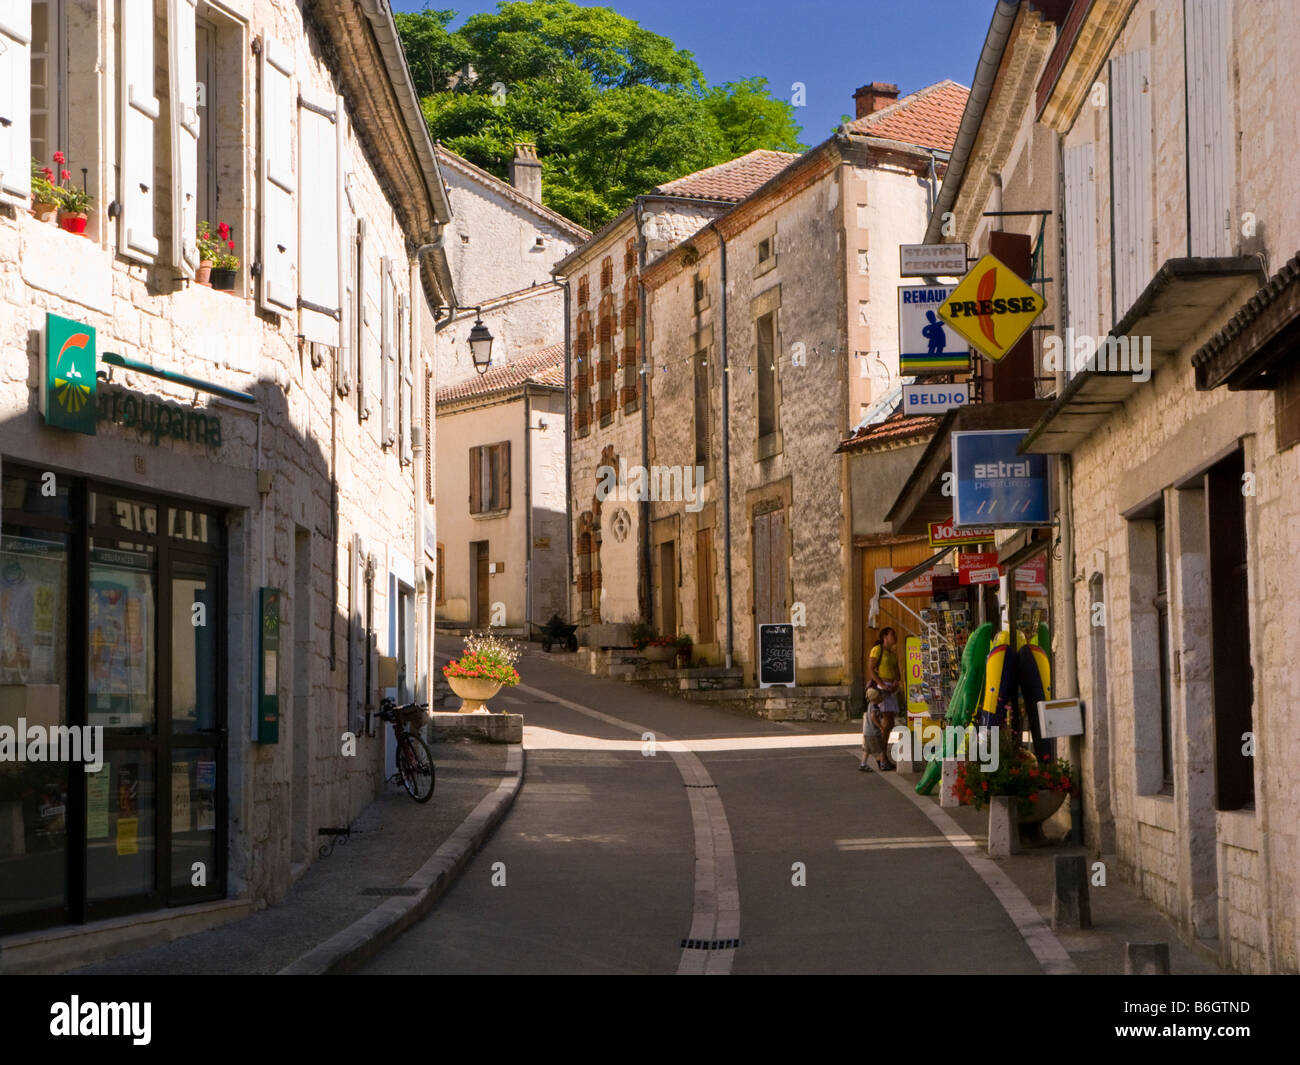 Rue avec petit magasin de tabac dans la ville médiévale de Montaigu de Quercy, Tarn et Garonne, France, Europe Banque D'Images